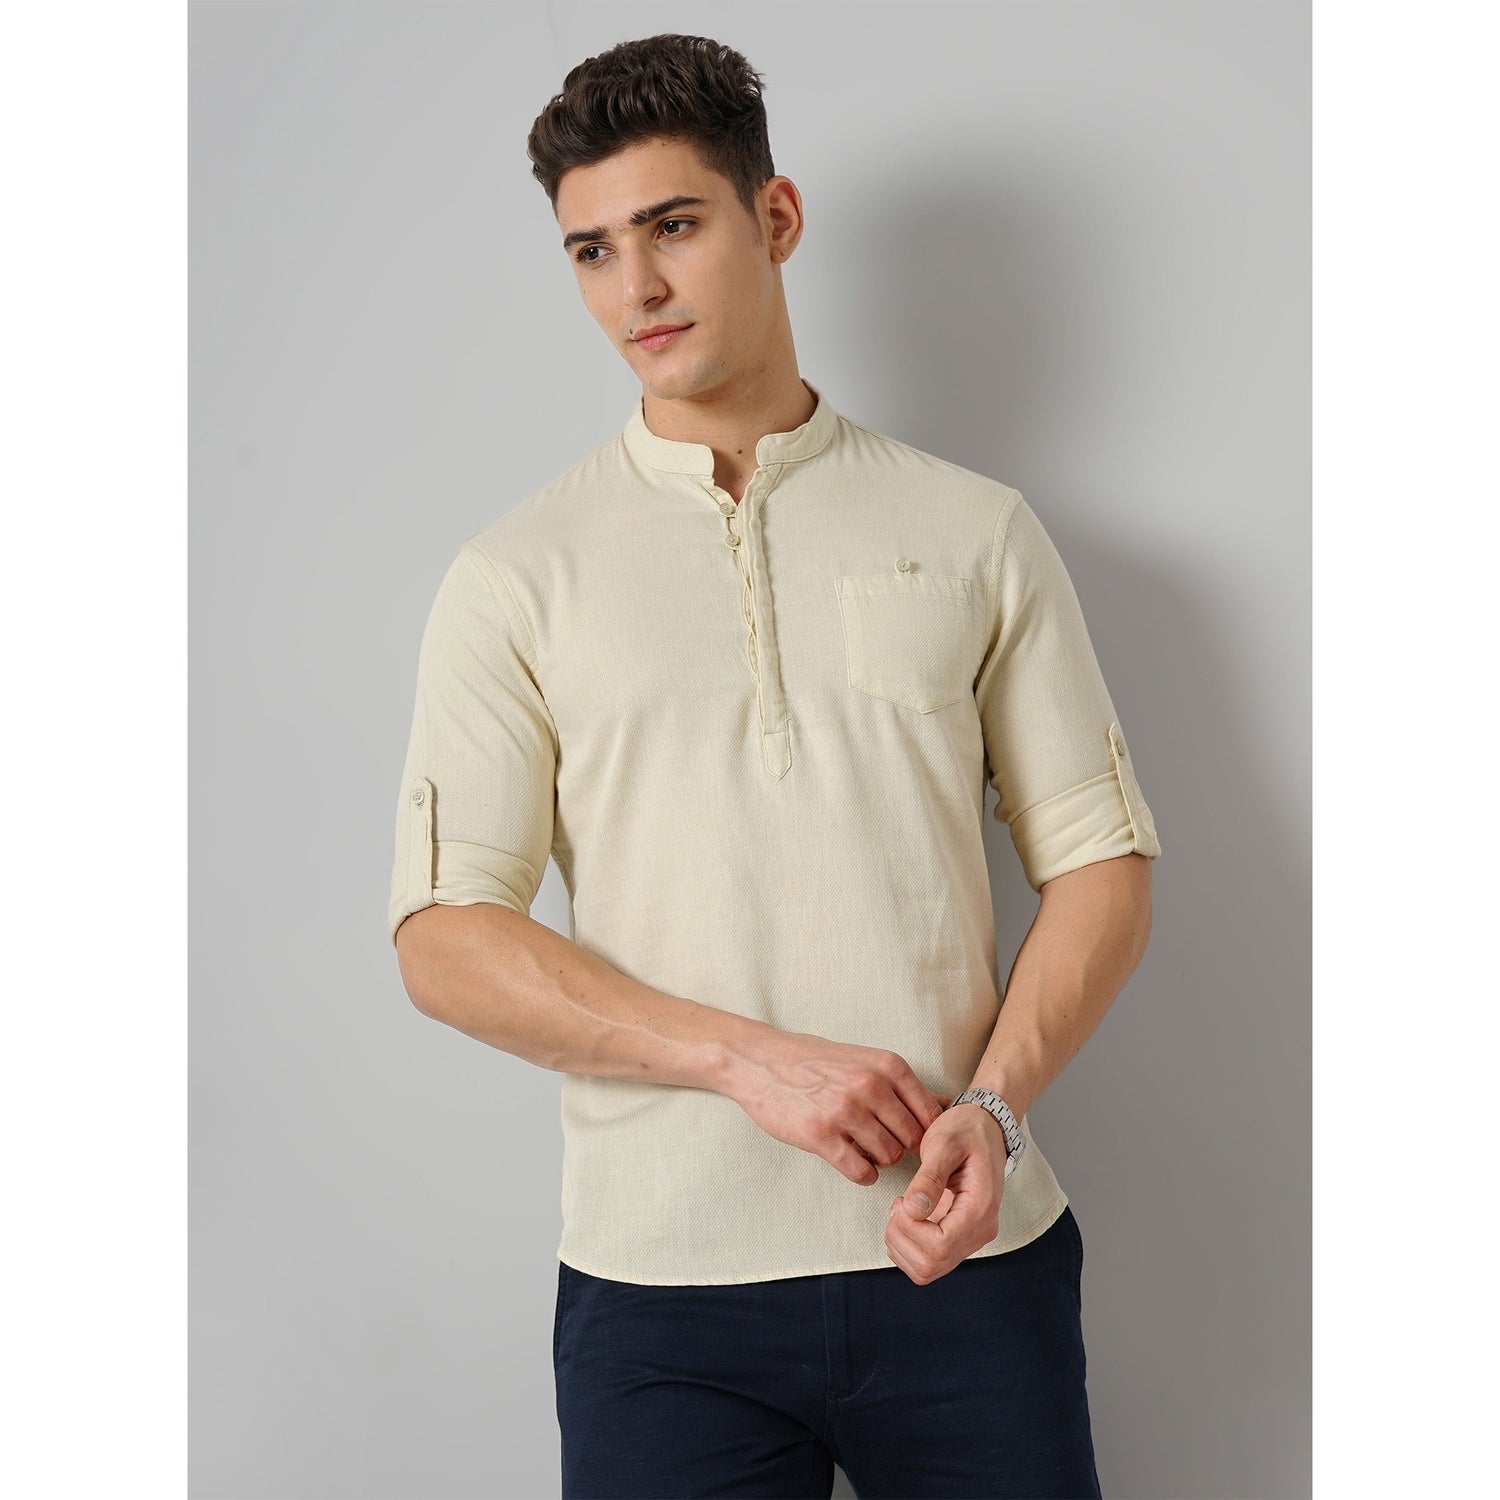 Solid Beige Cotton Shirt (FASTRU)